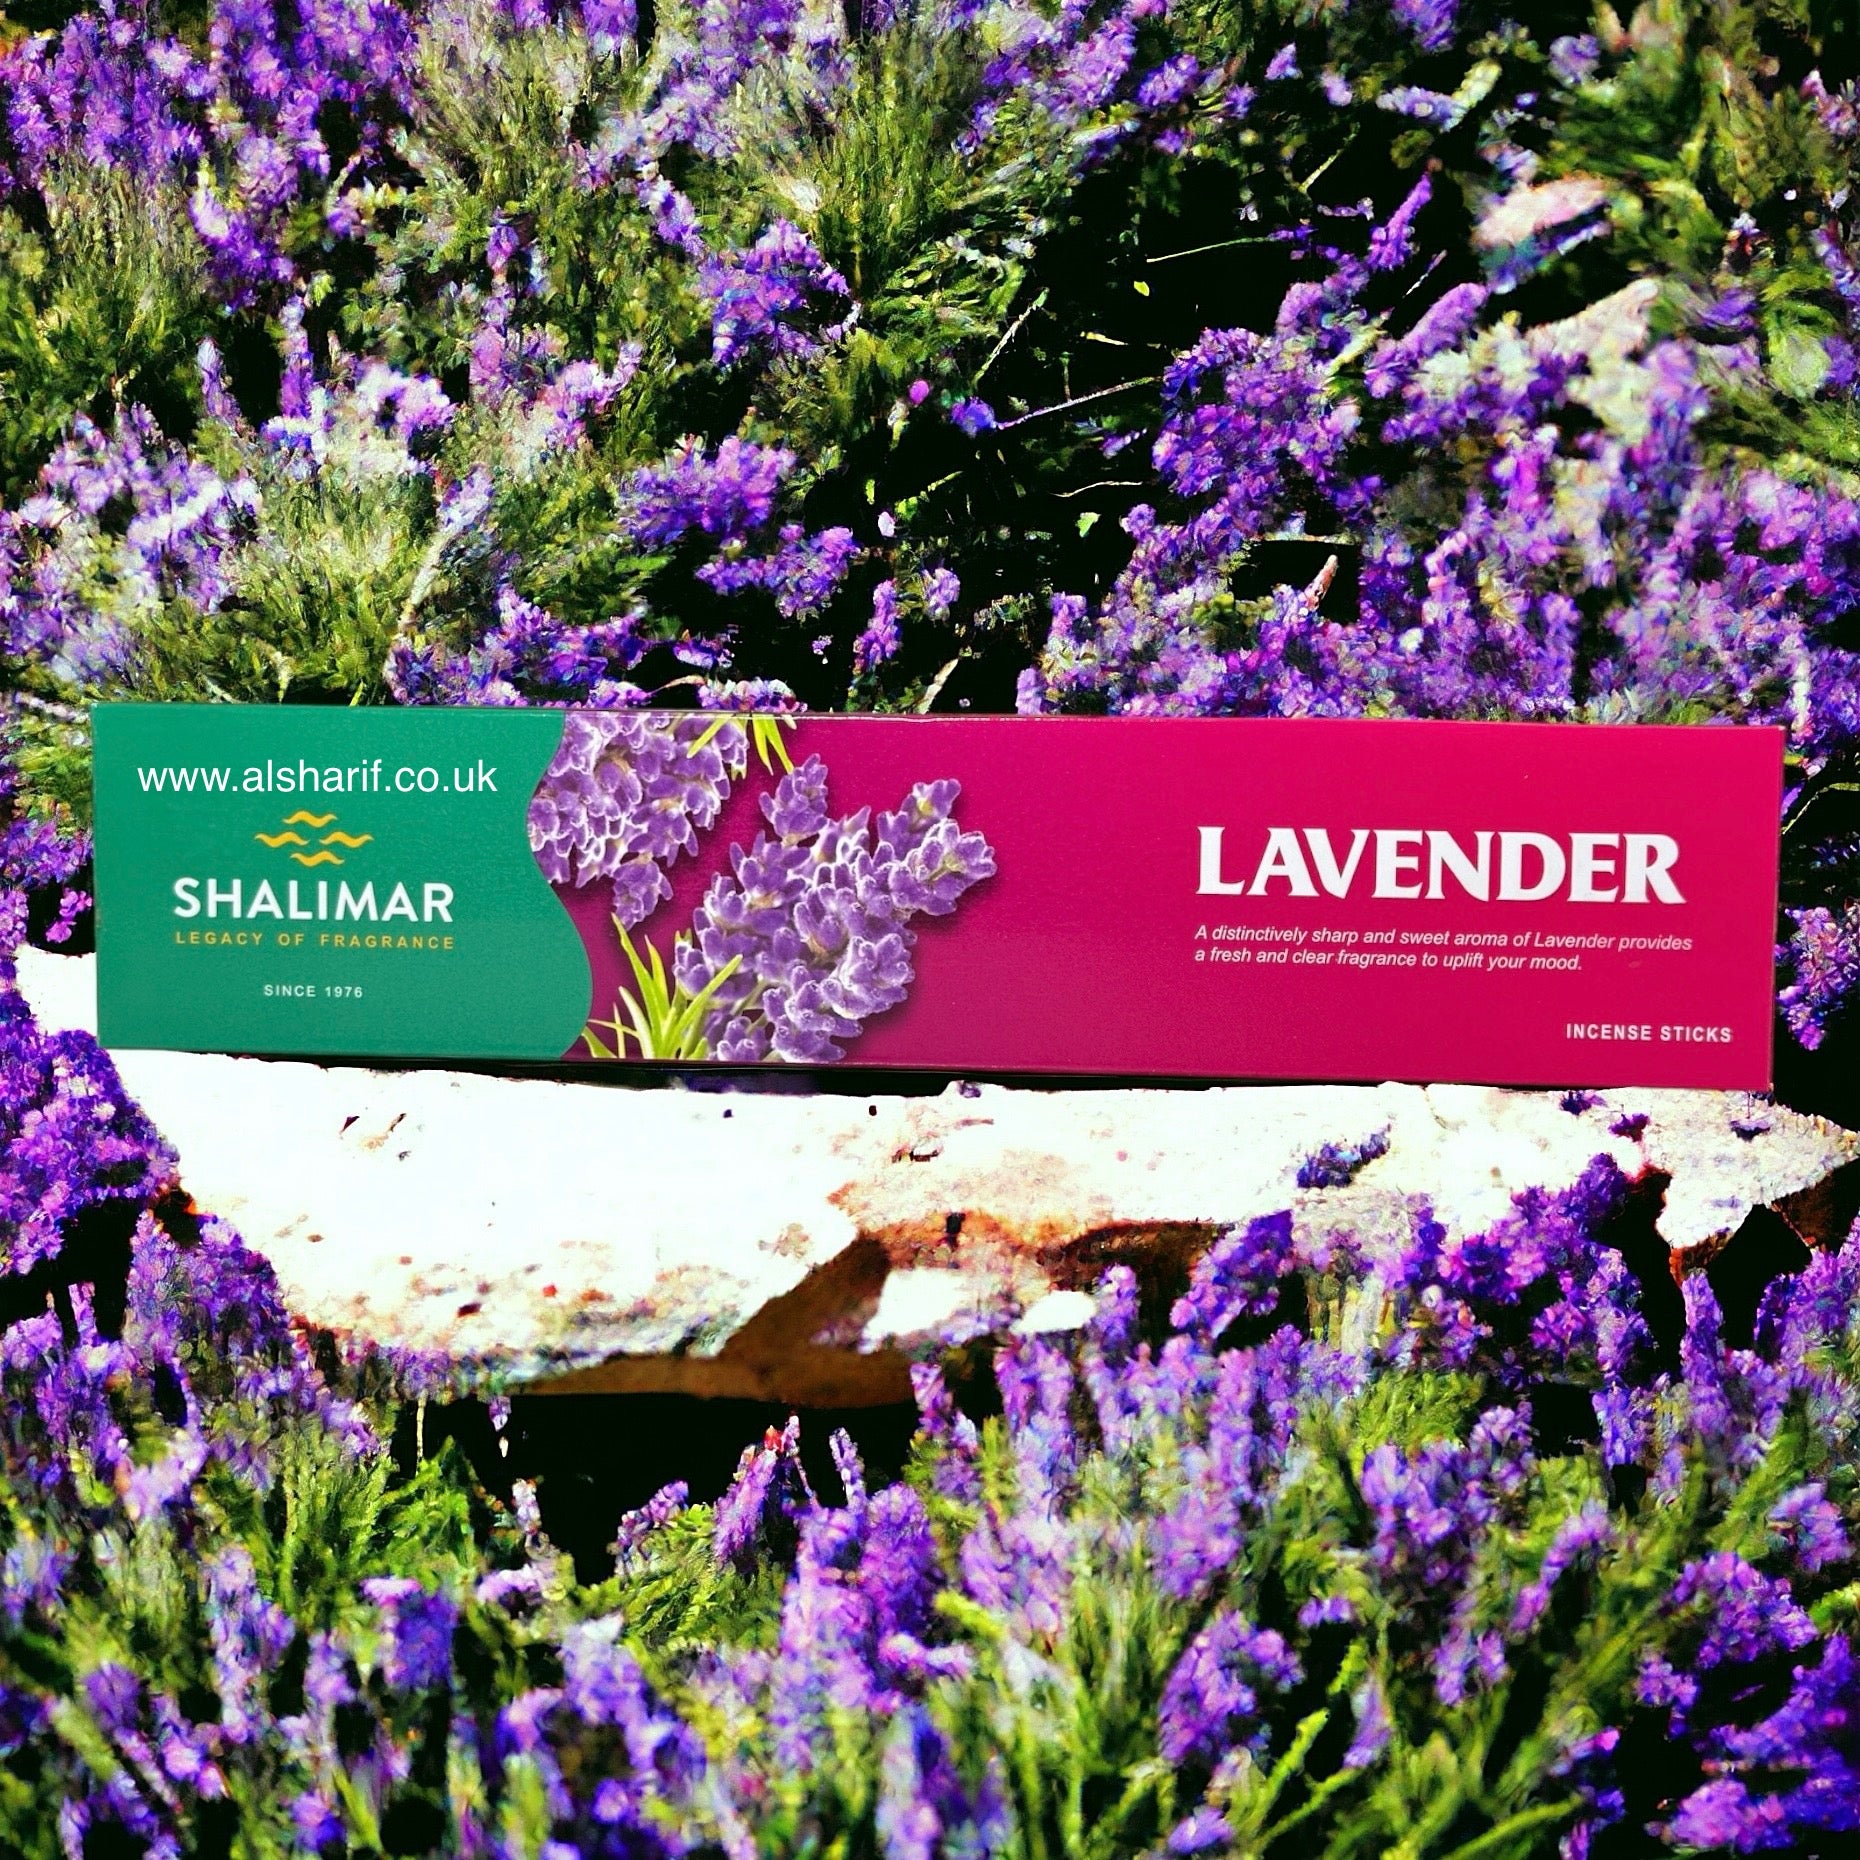 Lavender Premium Incense sticks